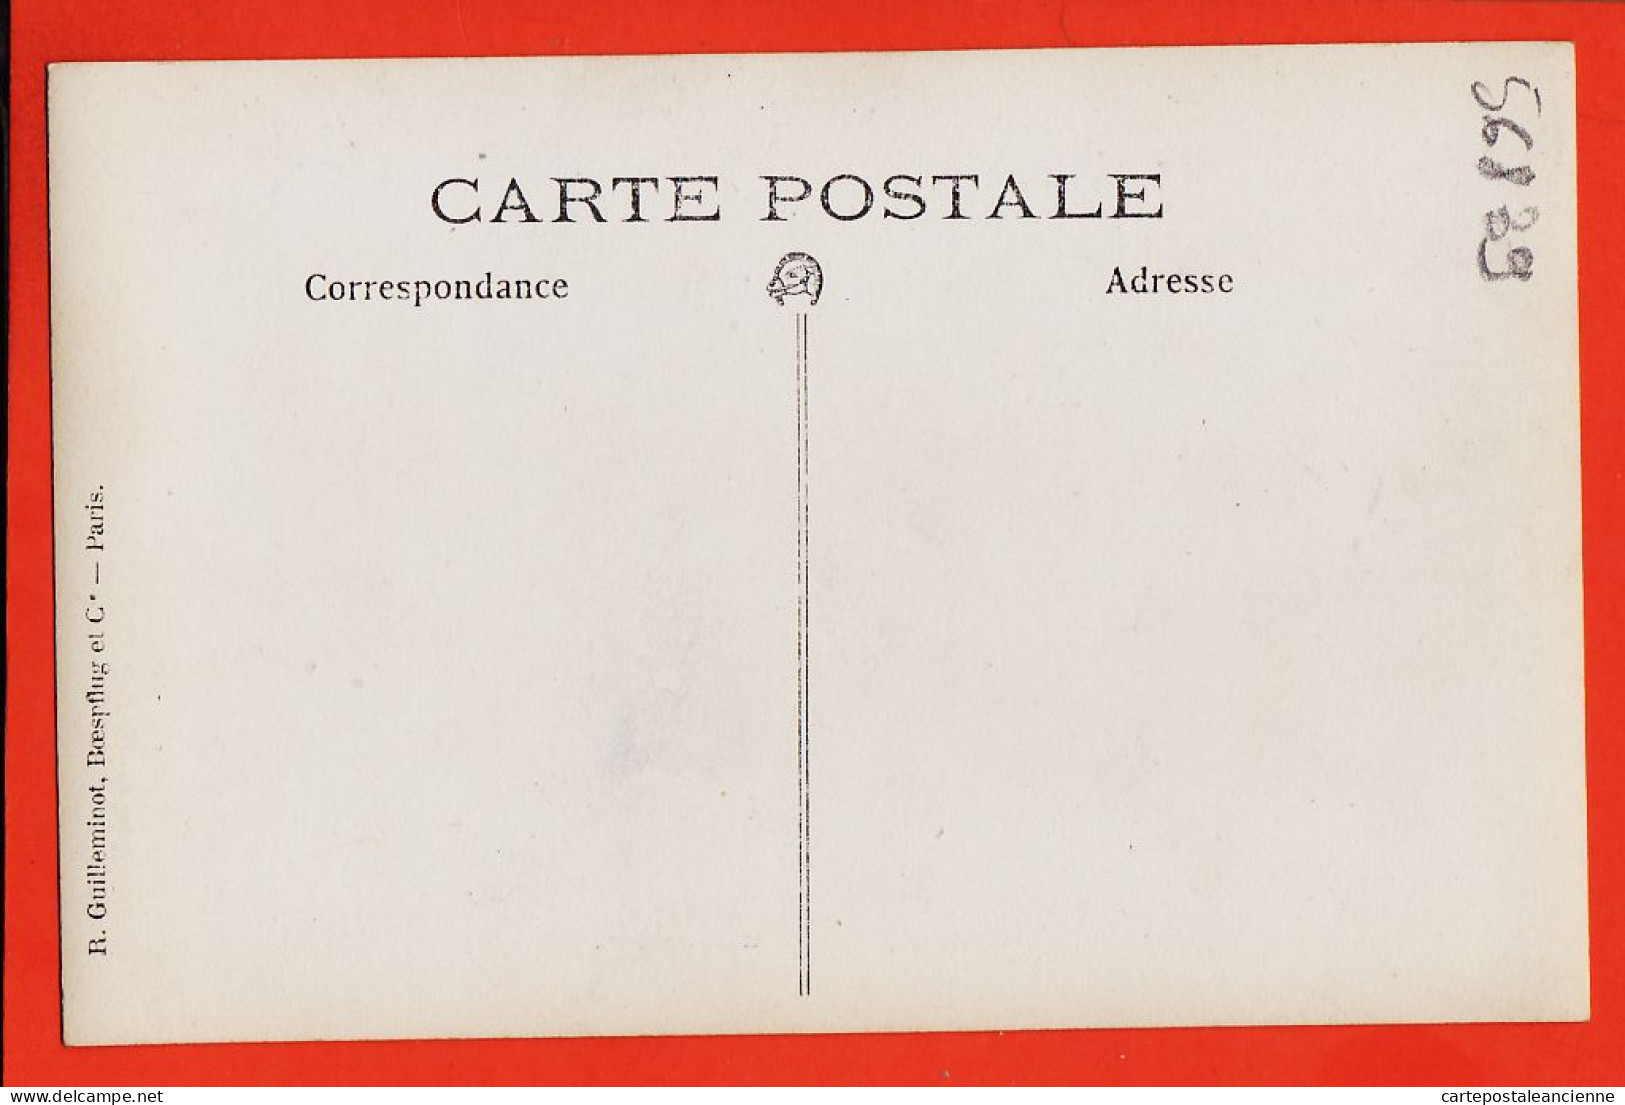 35655 / Carte-Photo ROUEN (76) Ecclésiastique (1) Religion Catholique 1910s  - Rouen